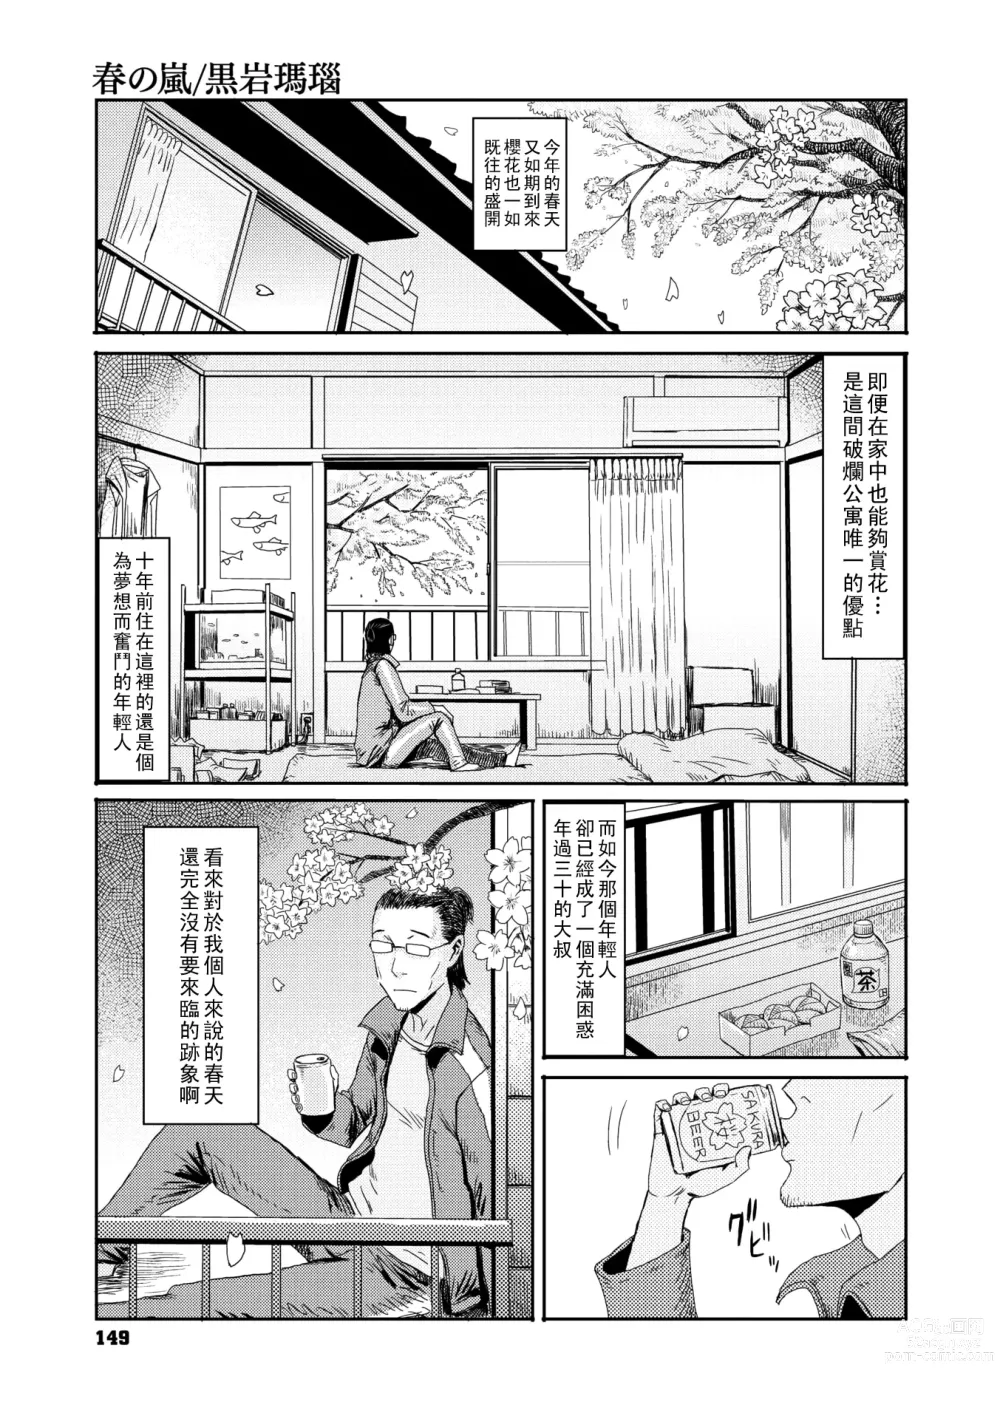 Page 1 of manga Haru no Arashi